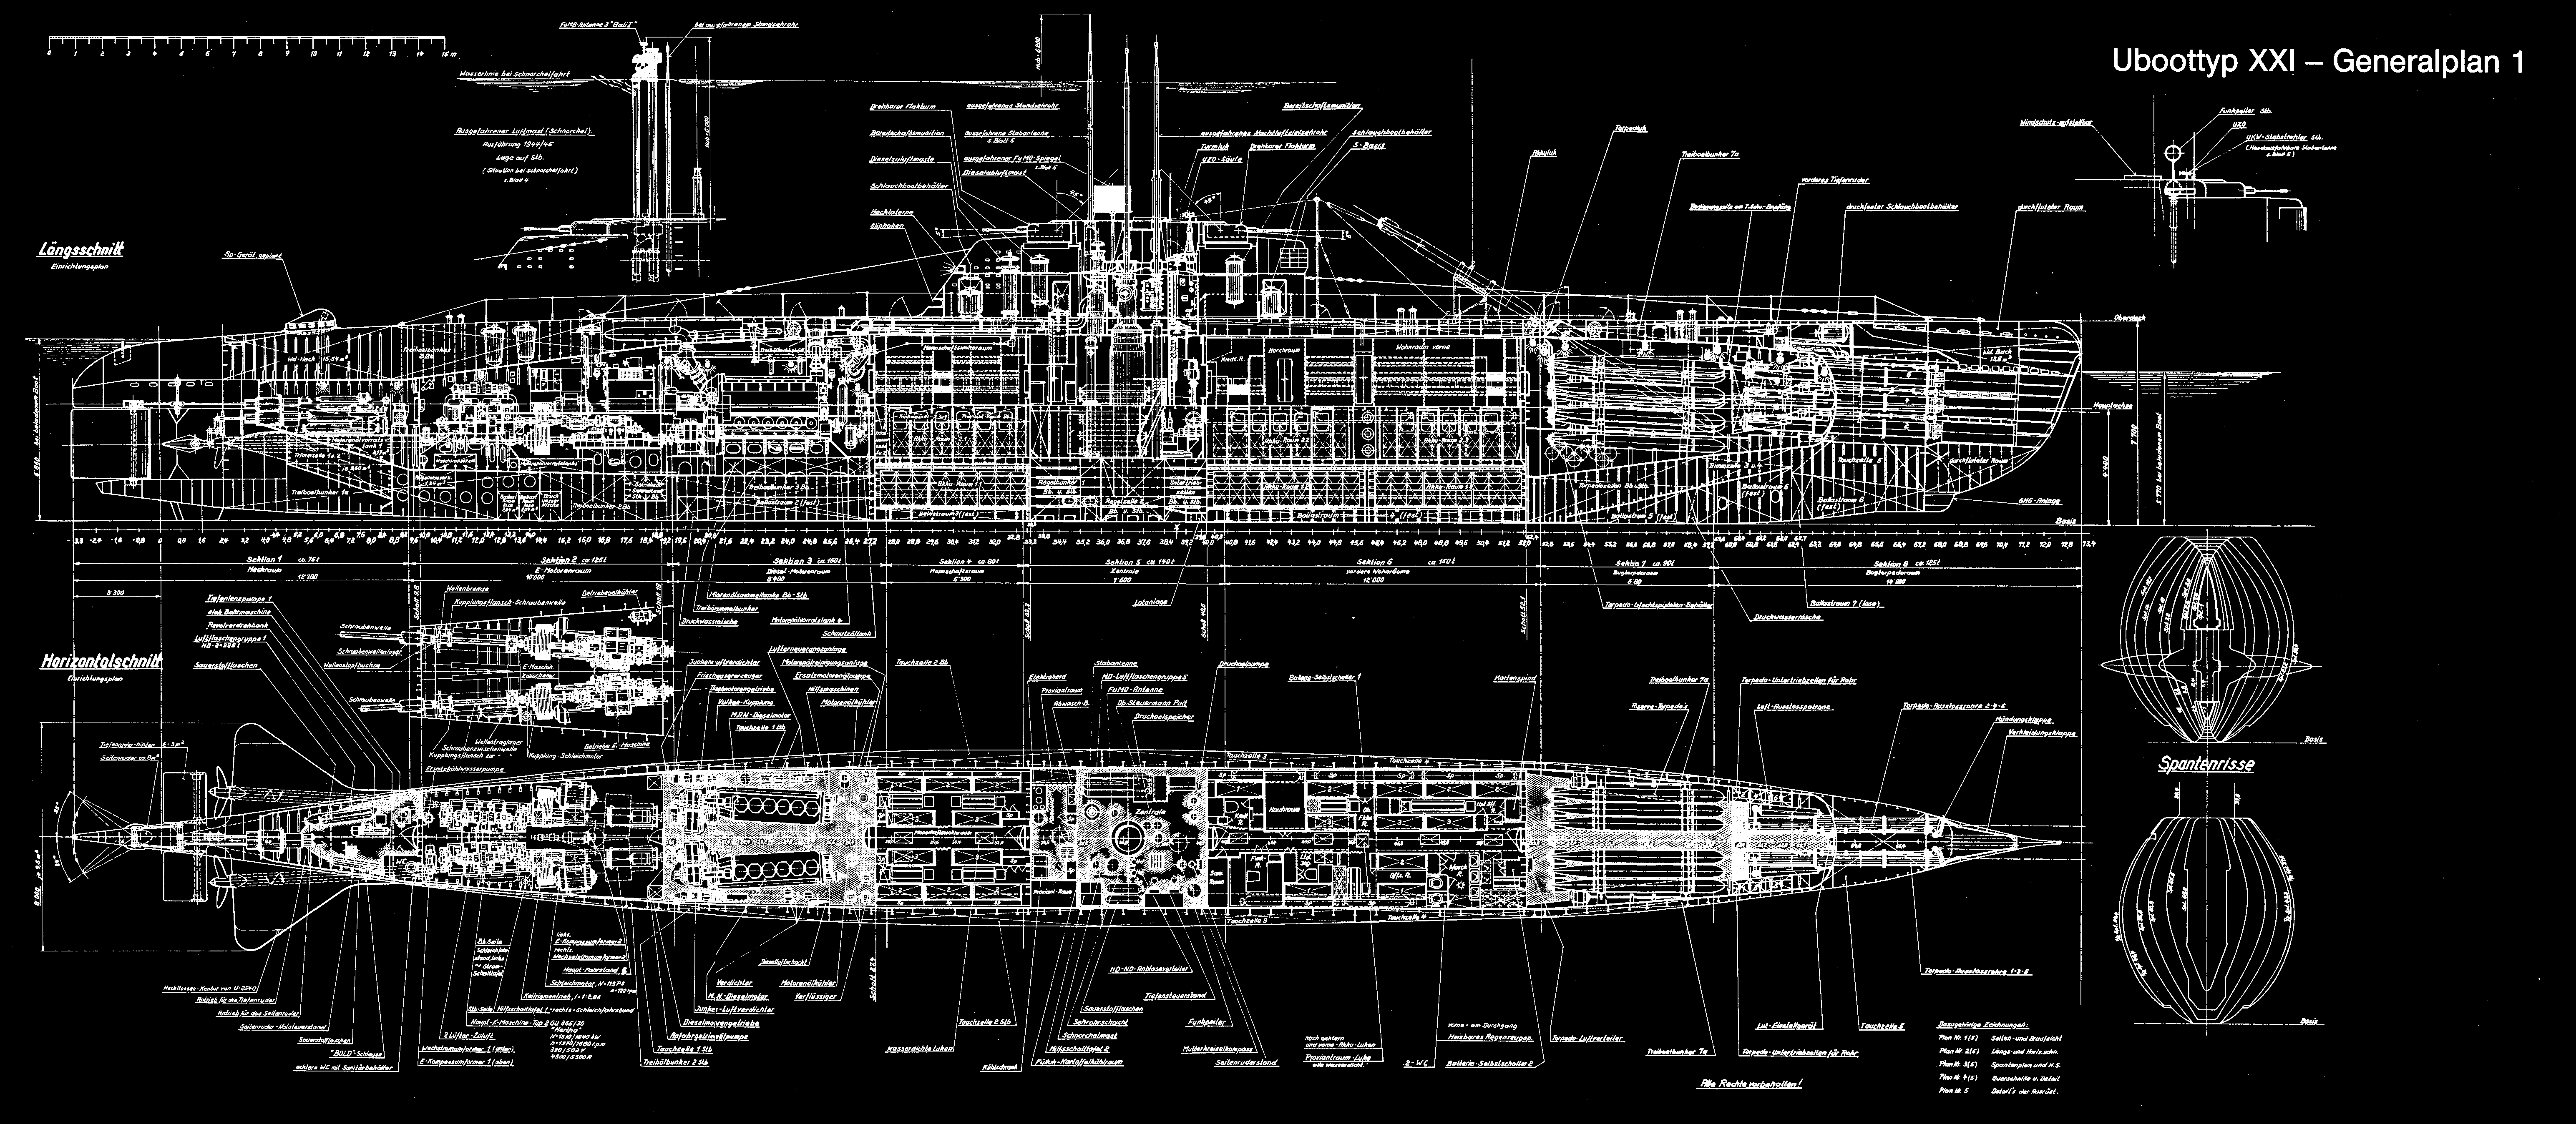  والپیپر شگفت آور و جالب از زیردریایی های کامپیوتری 